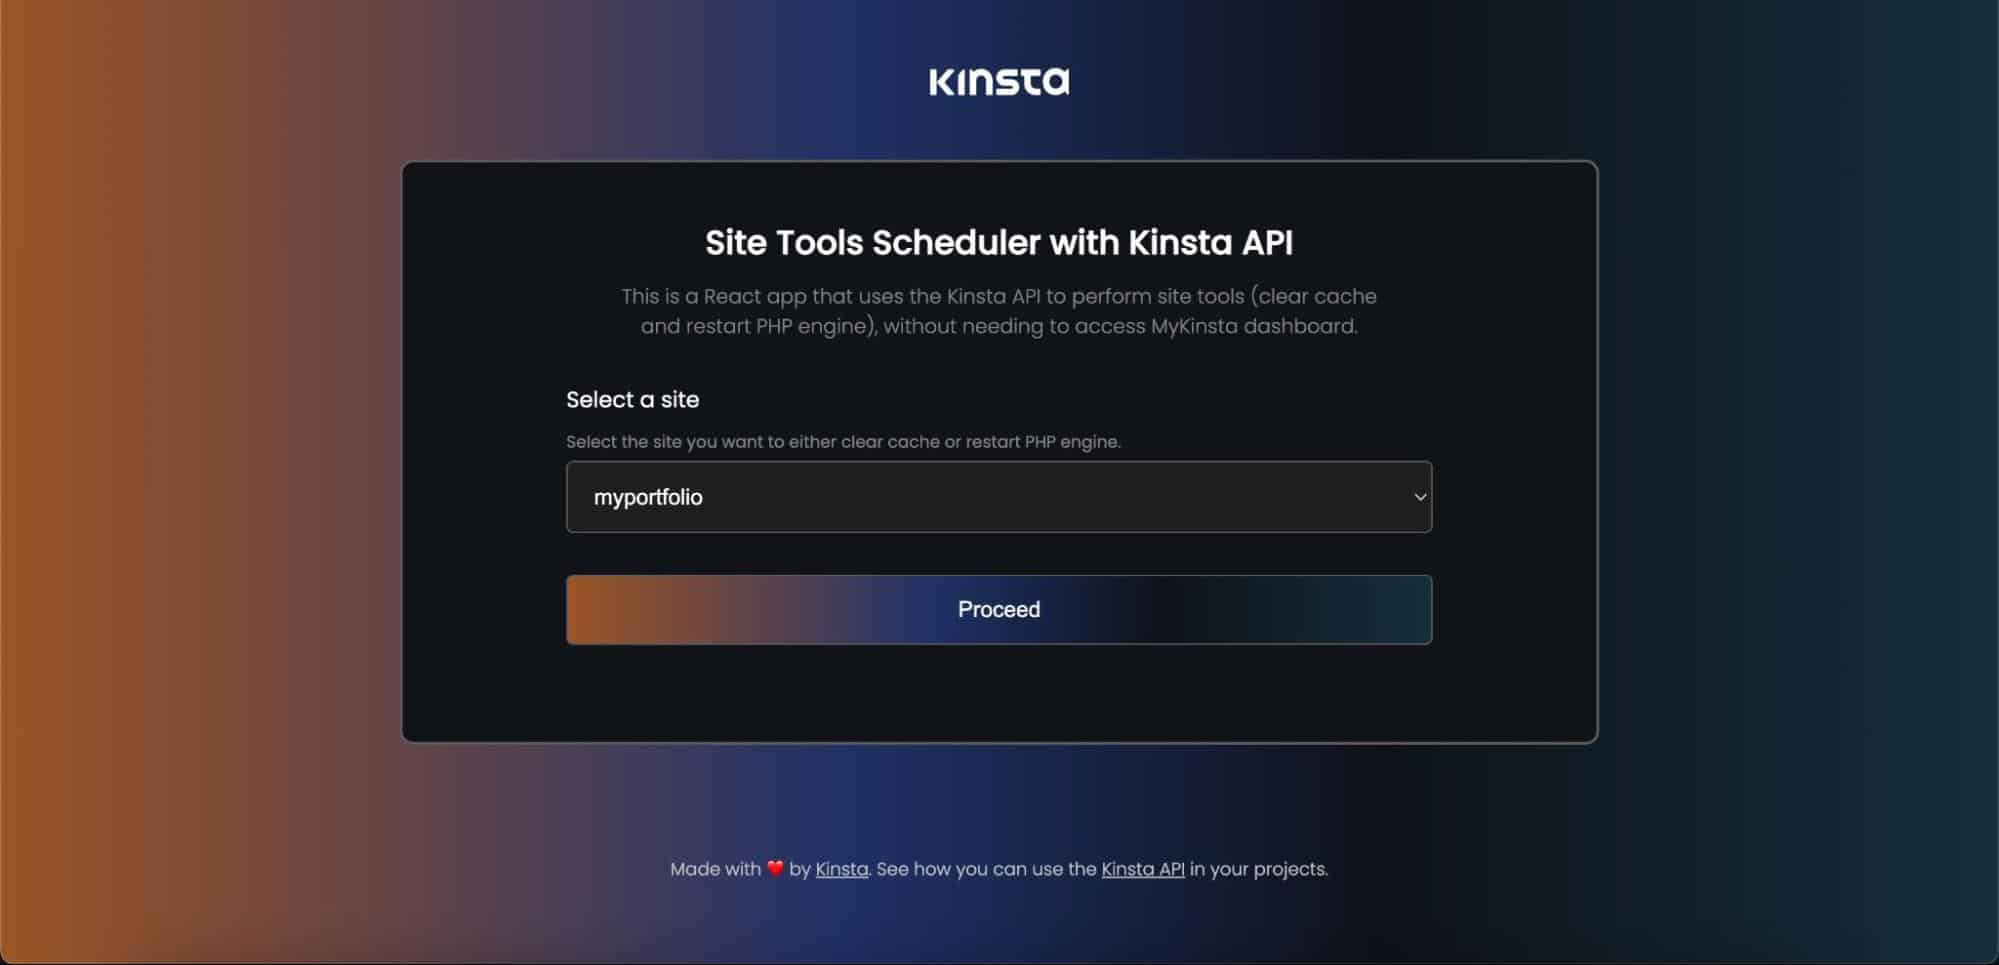 Aplicativo React personalizado para gerenciamento de ferramentas do site Kinsta.